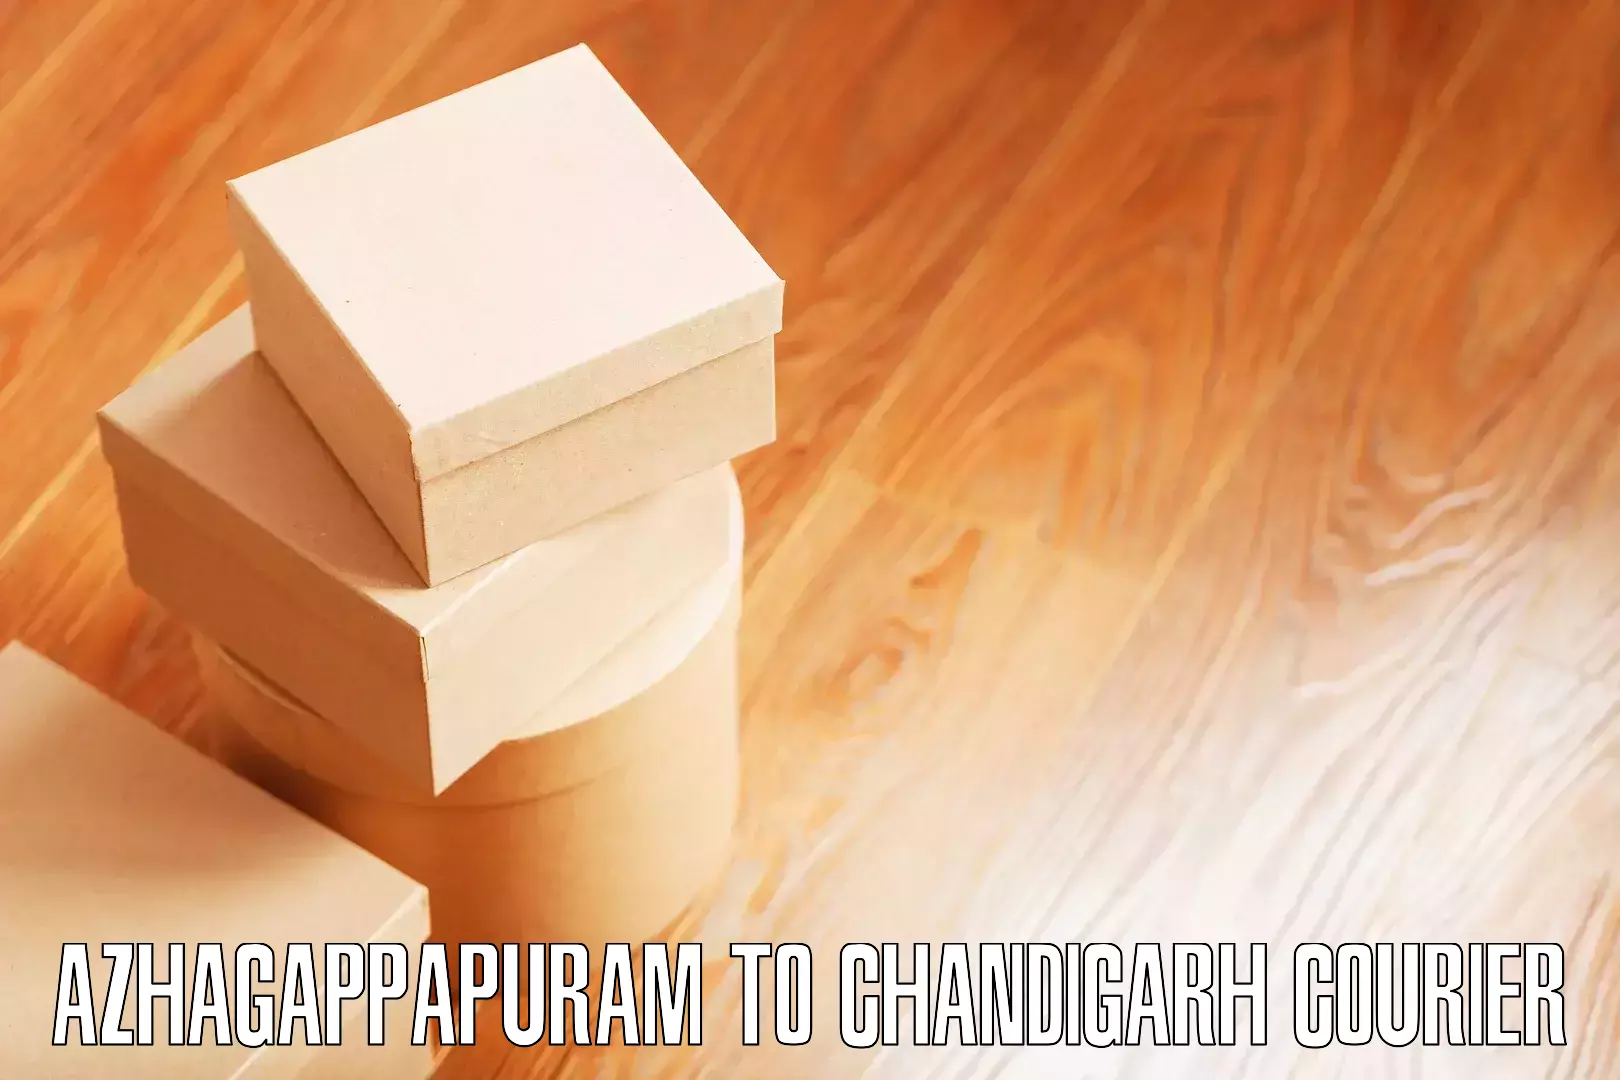 Furniture moving assistance Azhagappapuram to Chandigarh